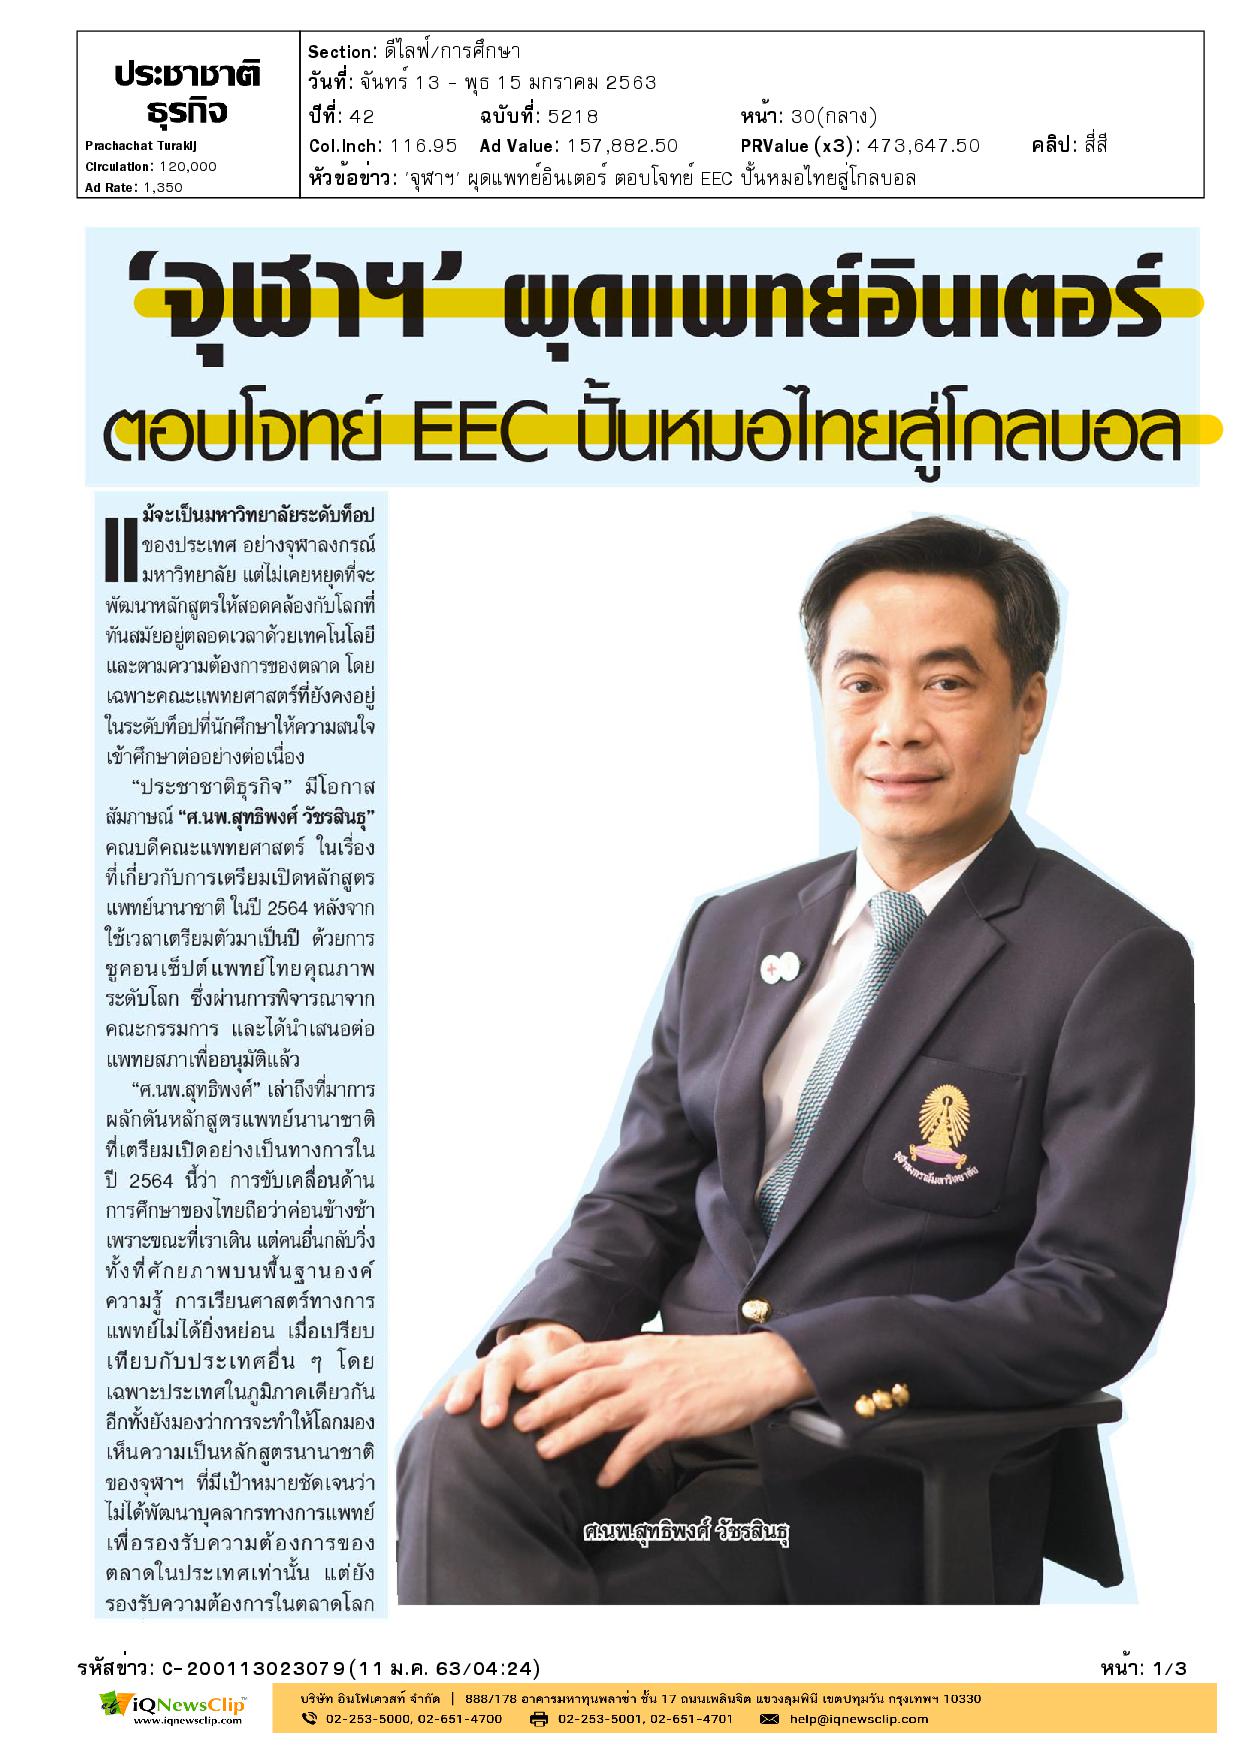 “จุฬา” ผุดแพทย์อินเตอร์ ตอบโจทย์ EEC ปั้นหมอไทยสู่โกลบอล